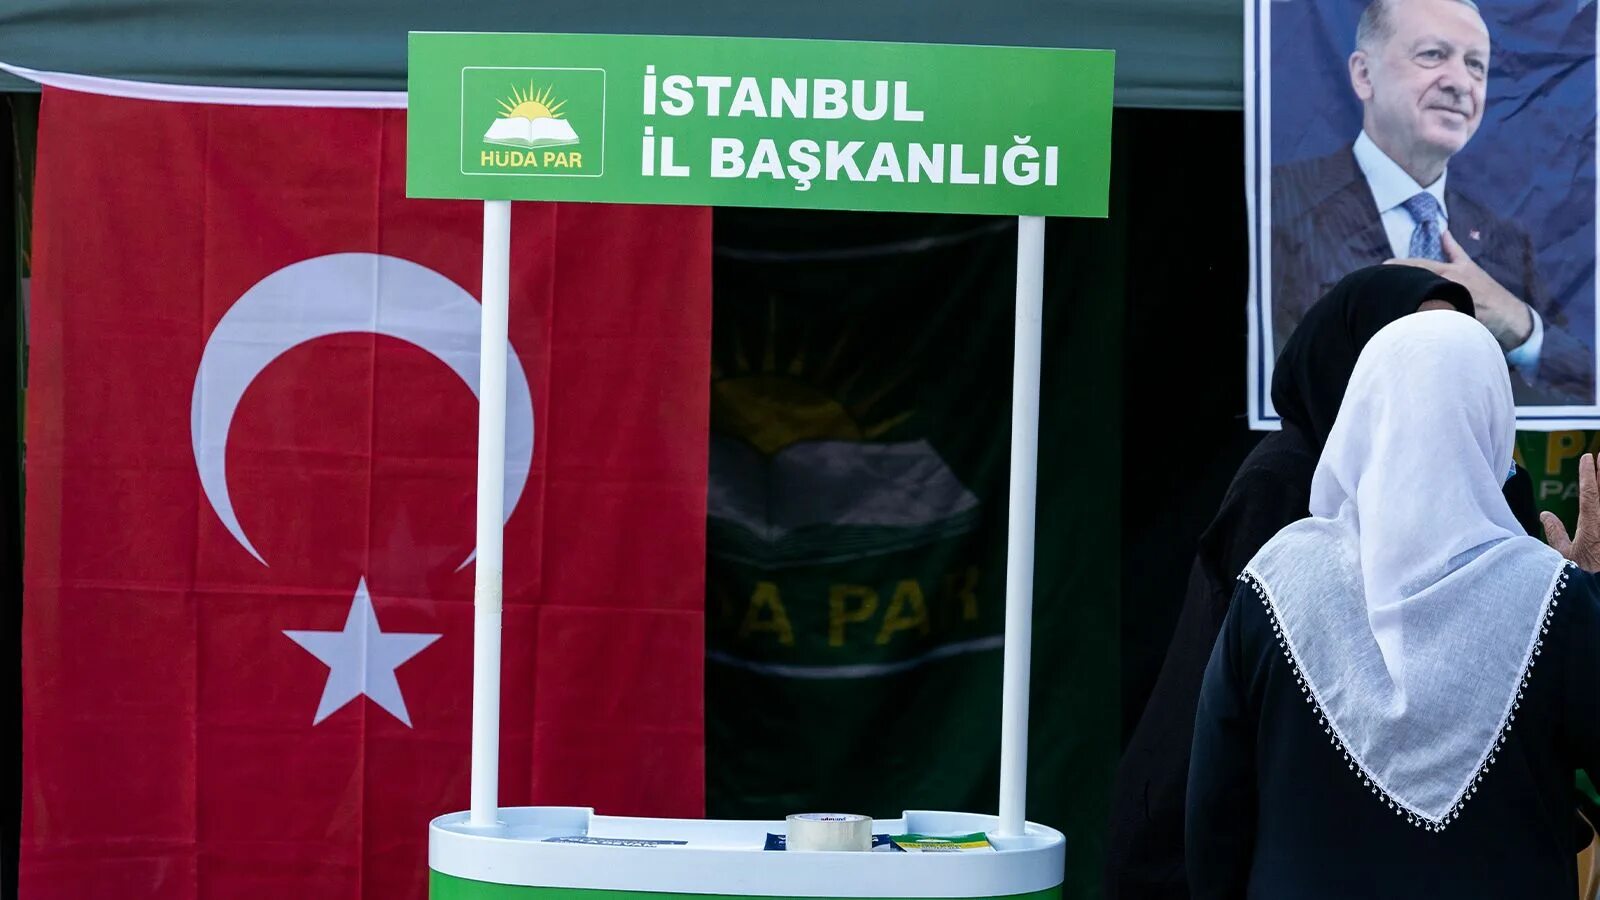 Выборы президента Турции. Парламентские выборы в Турции завершились. Итоги парламентских выборов в Турции. Эрдоган фото.